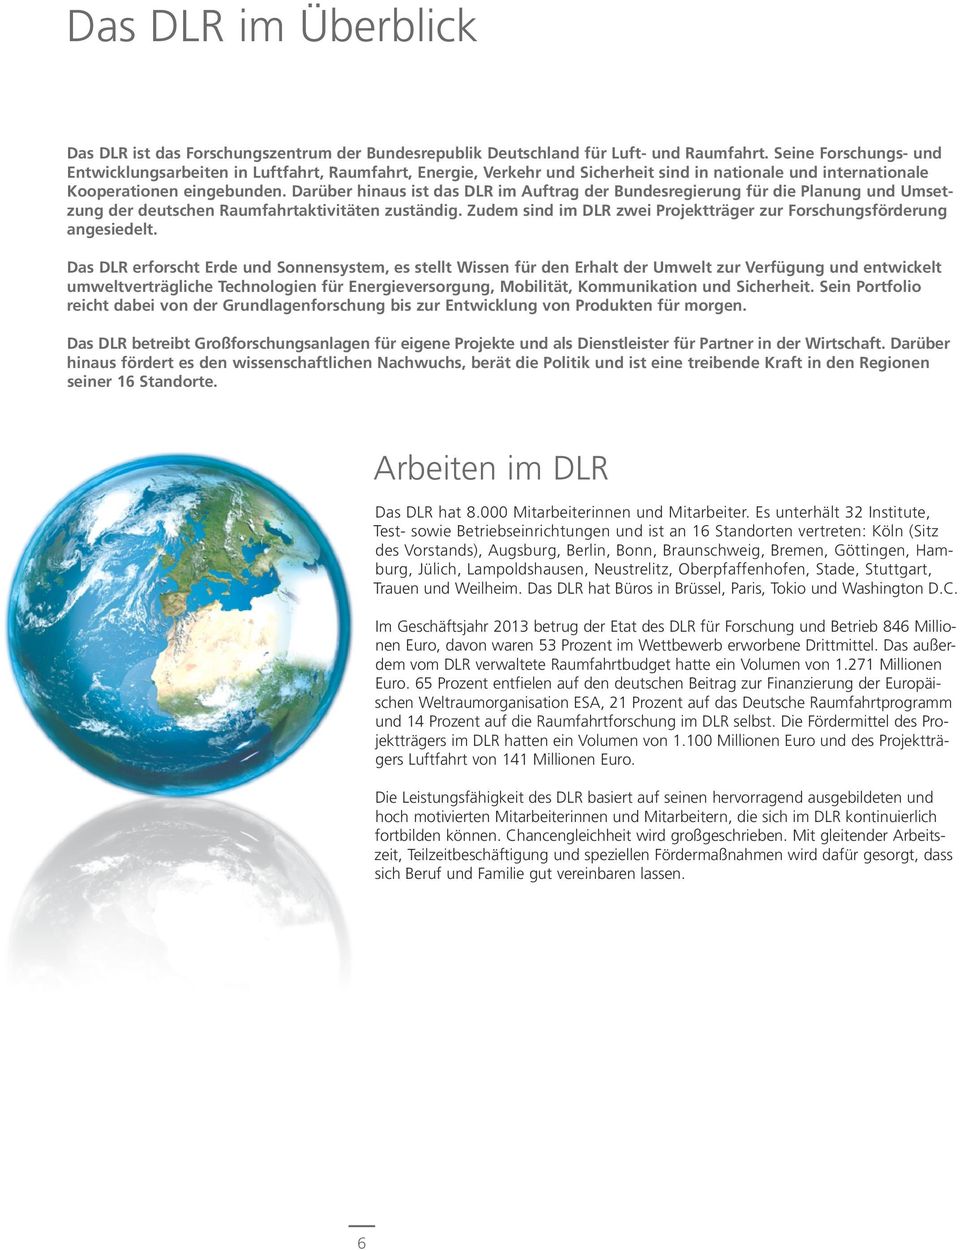 Darüber hinaus ist das DLR im Auftrag der Bundesregierung für die Planung und Umsetzung der deutschen Raumfahrtaktivitäten zuständig.